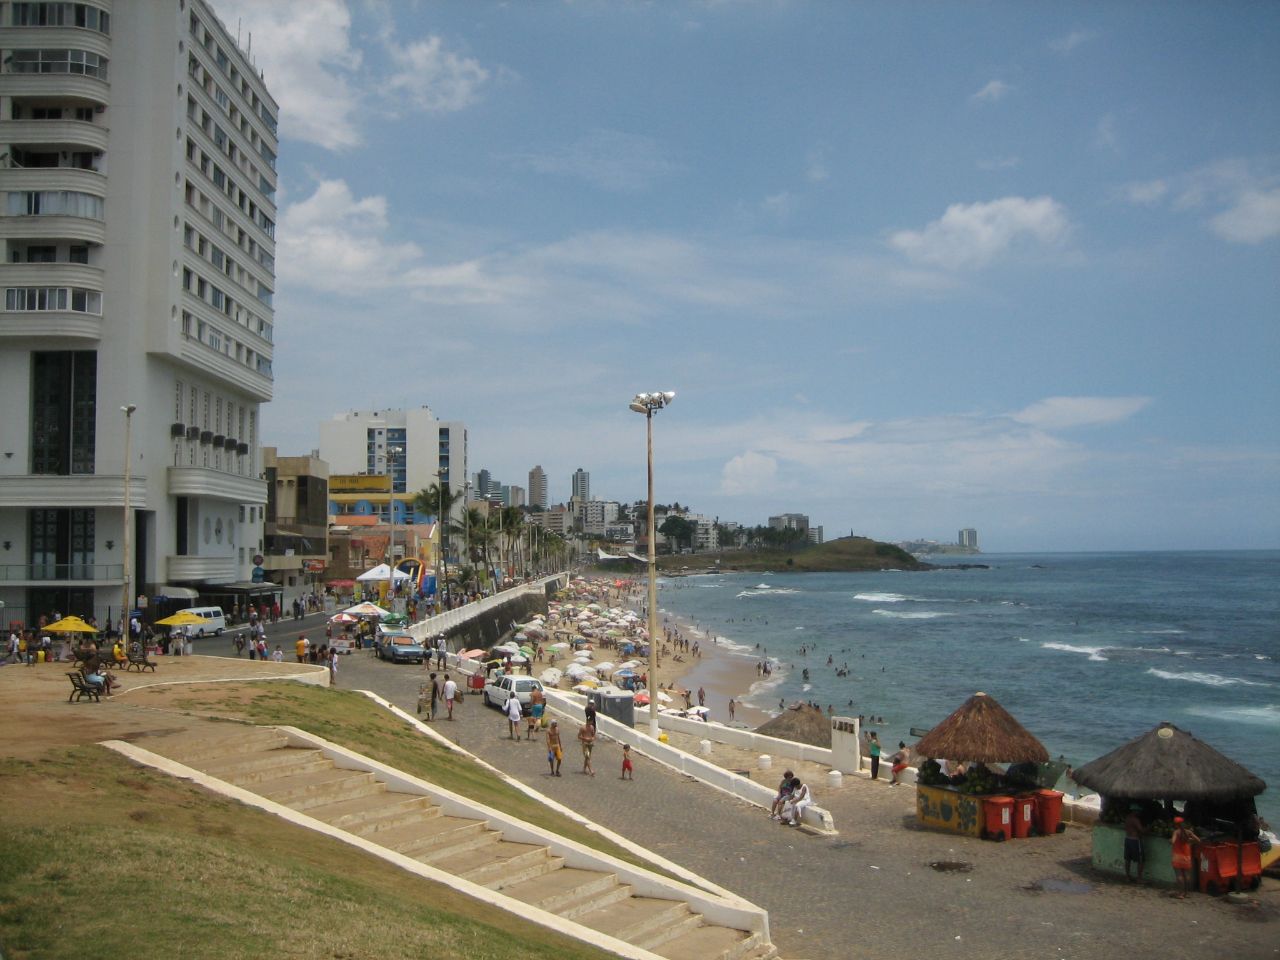 Маяк Св. Антония и пляж при нём Сальвадор, Бразилия